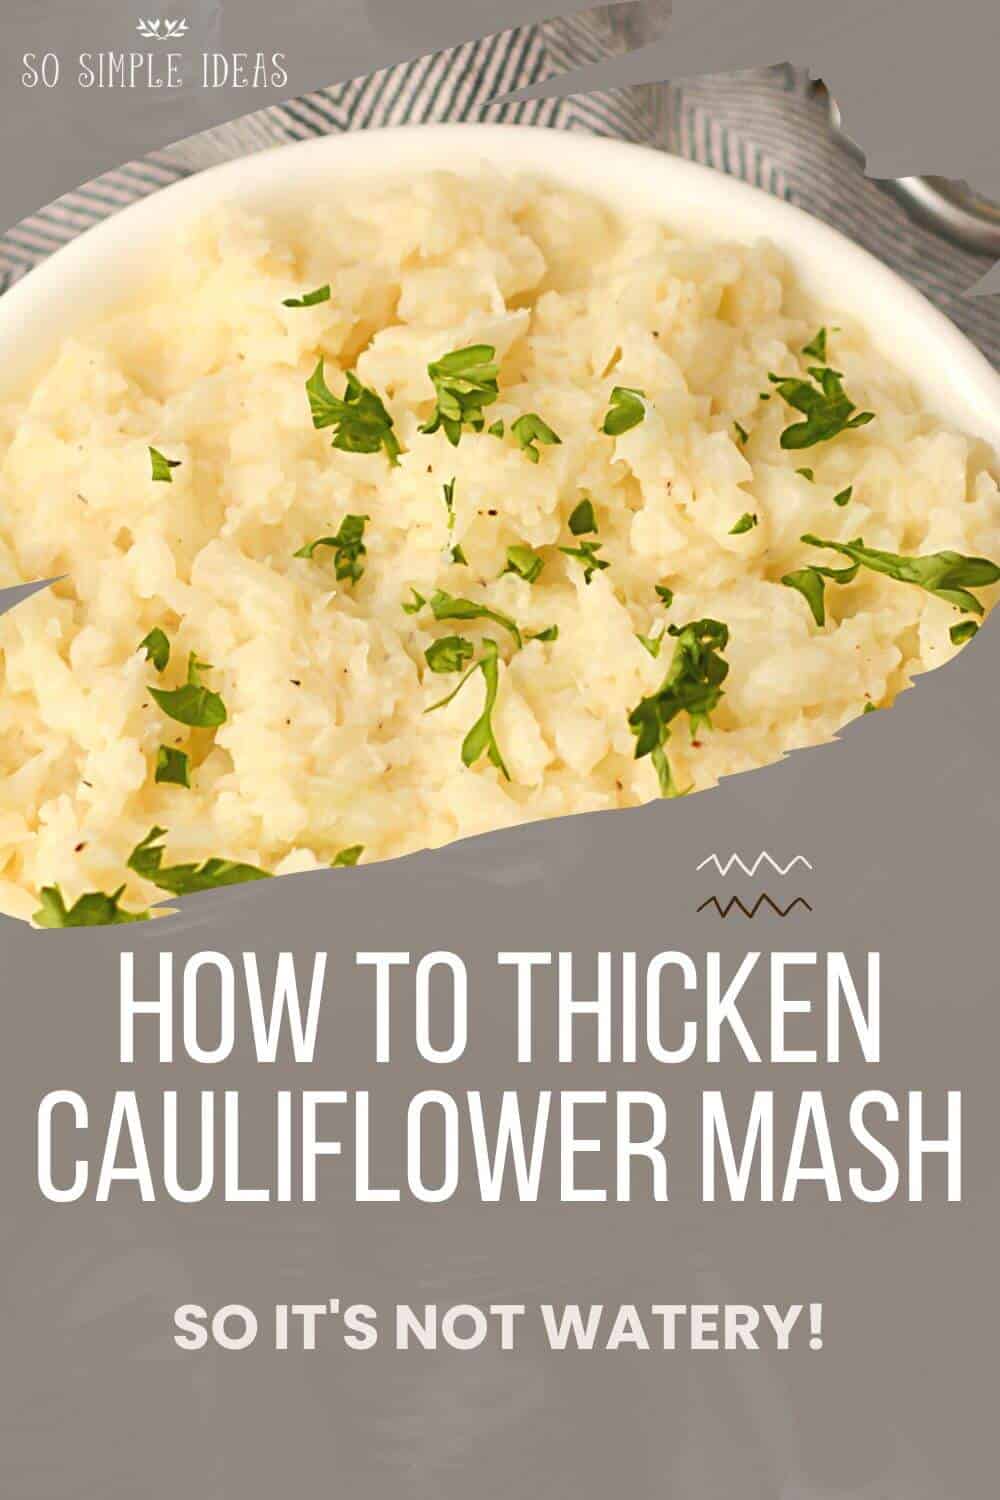 how to thicken cauliflower mash pinterest image.